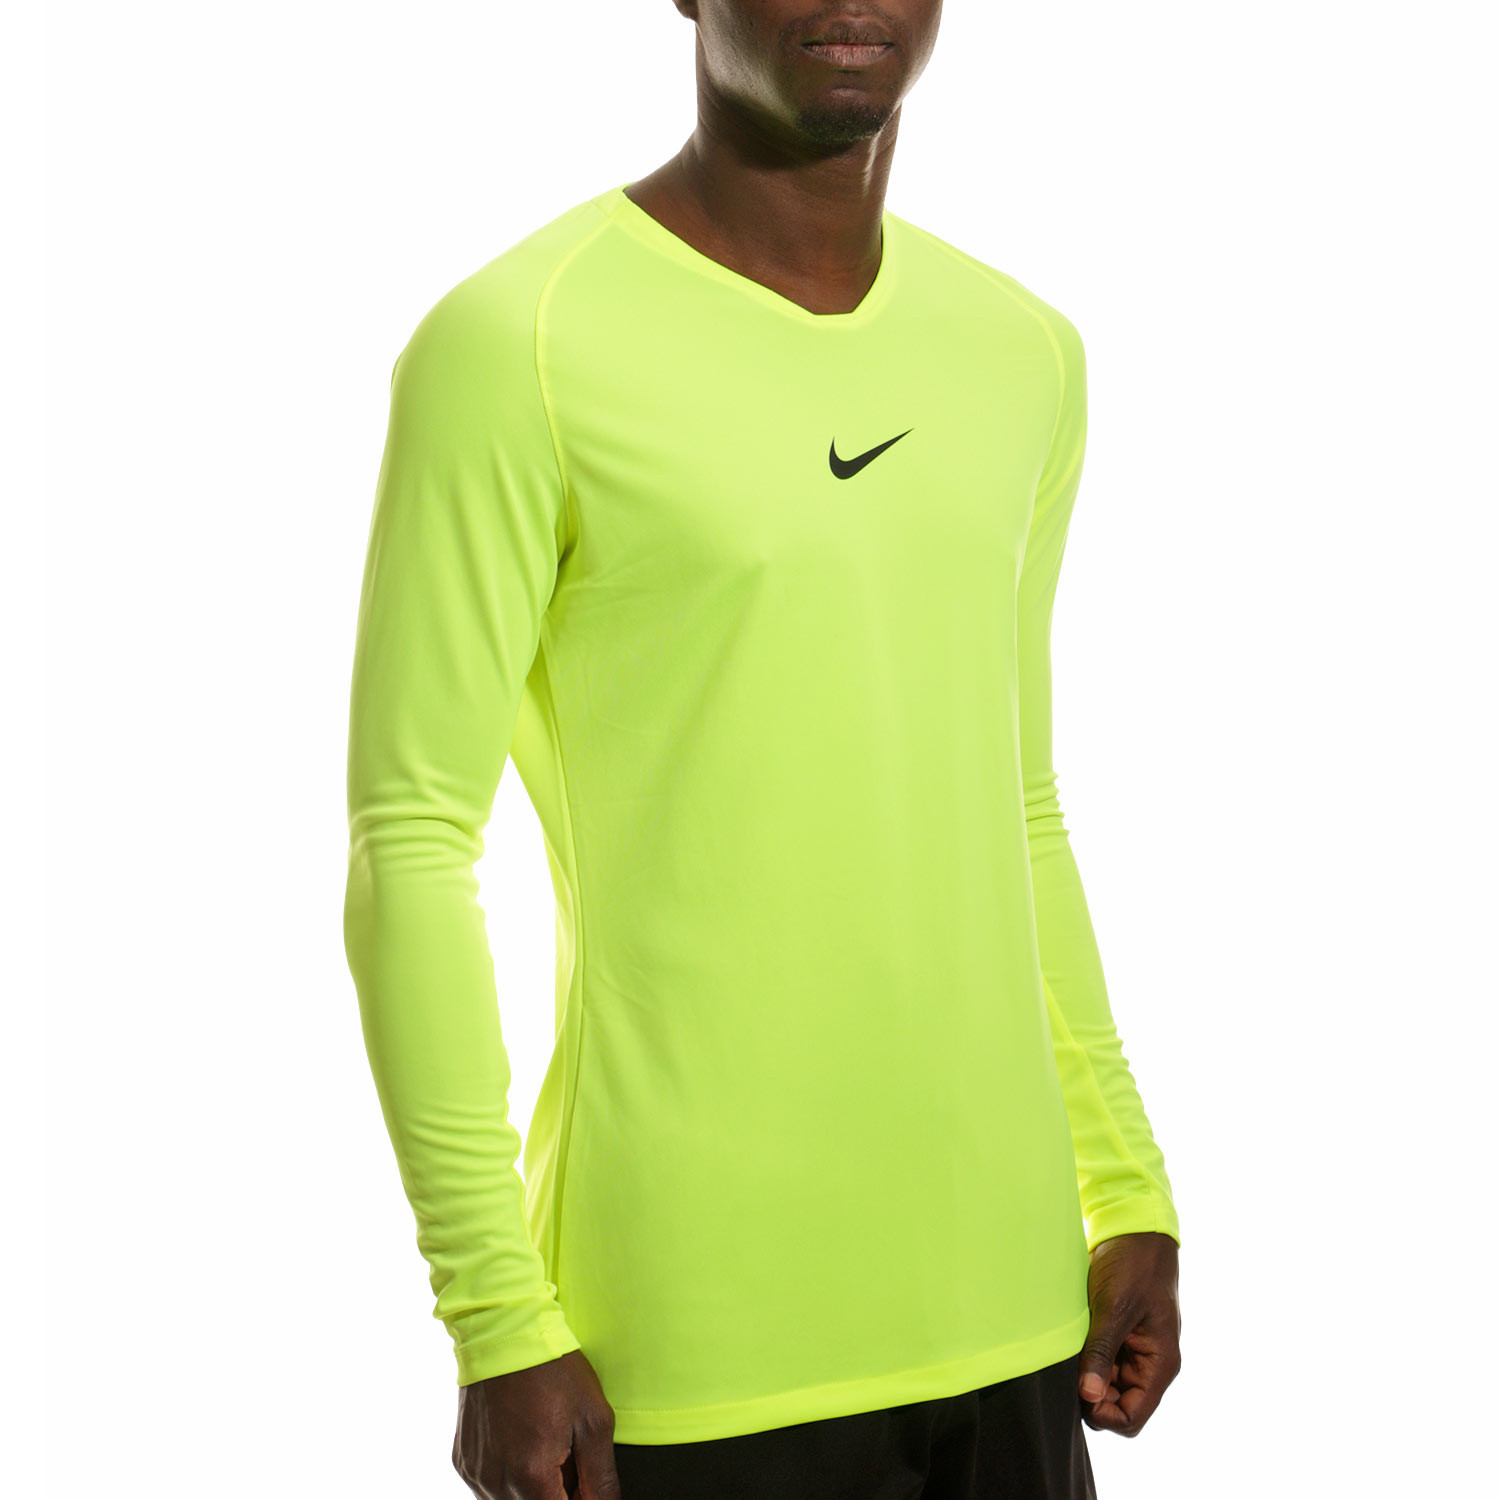 Camiseta térmica manga larga Nike verde